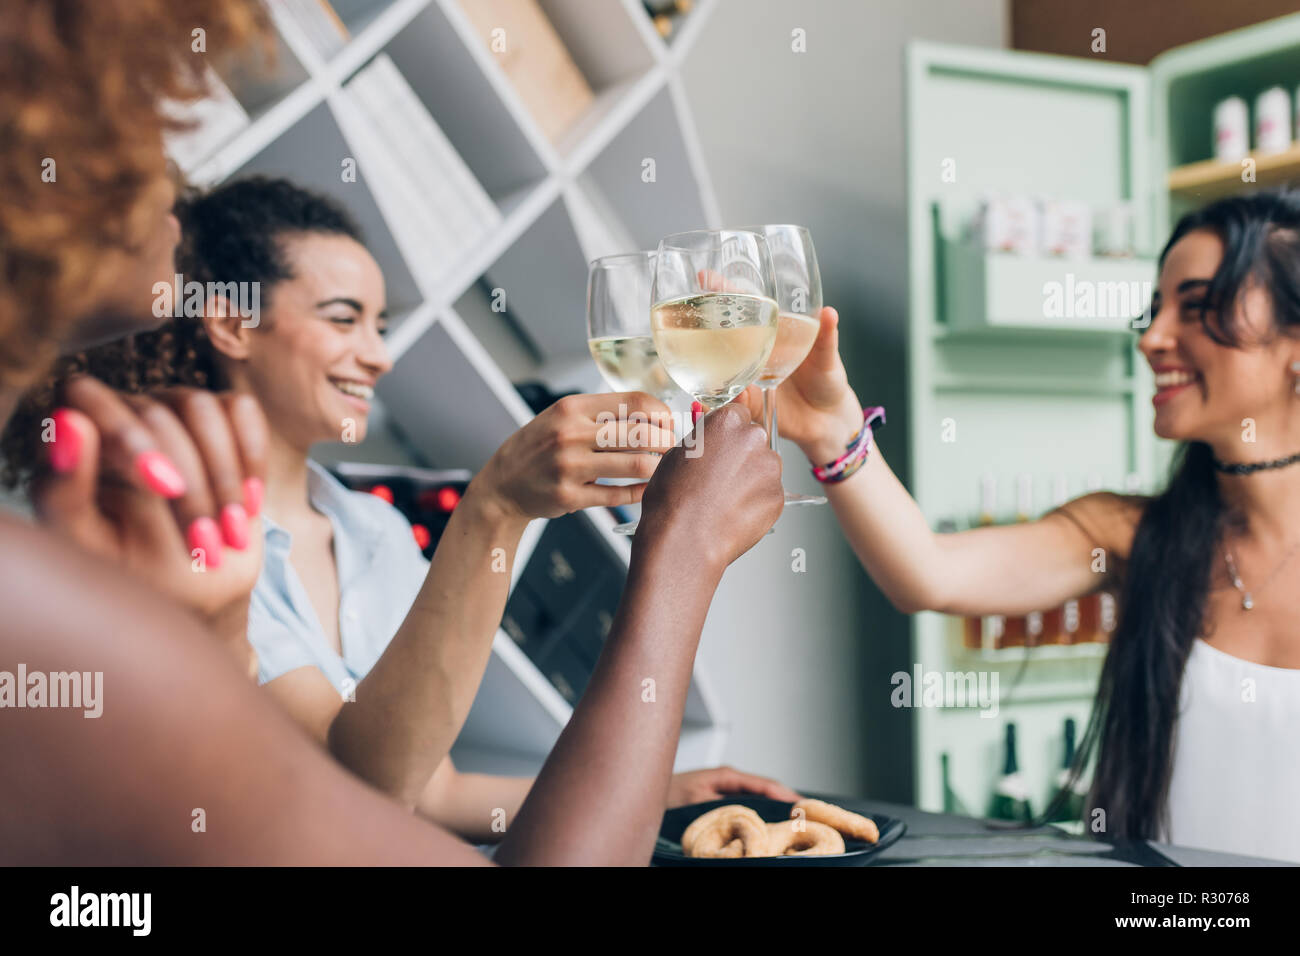 Tres jóvenes mujeres indoor beber después de trabajar haciendo un brindis - celebrando el éxito de la relajación, después del trabajo, concepto Foto de stock